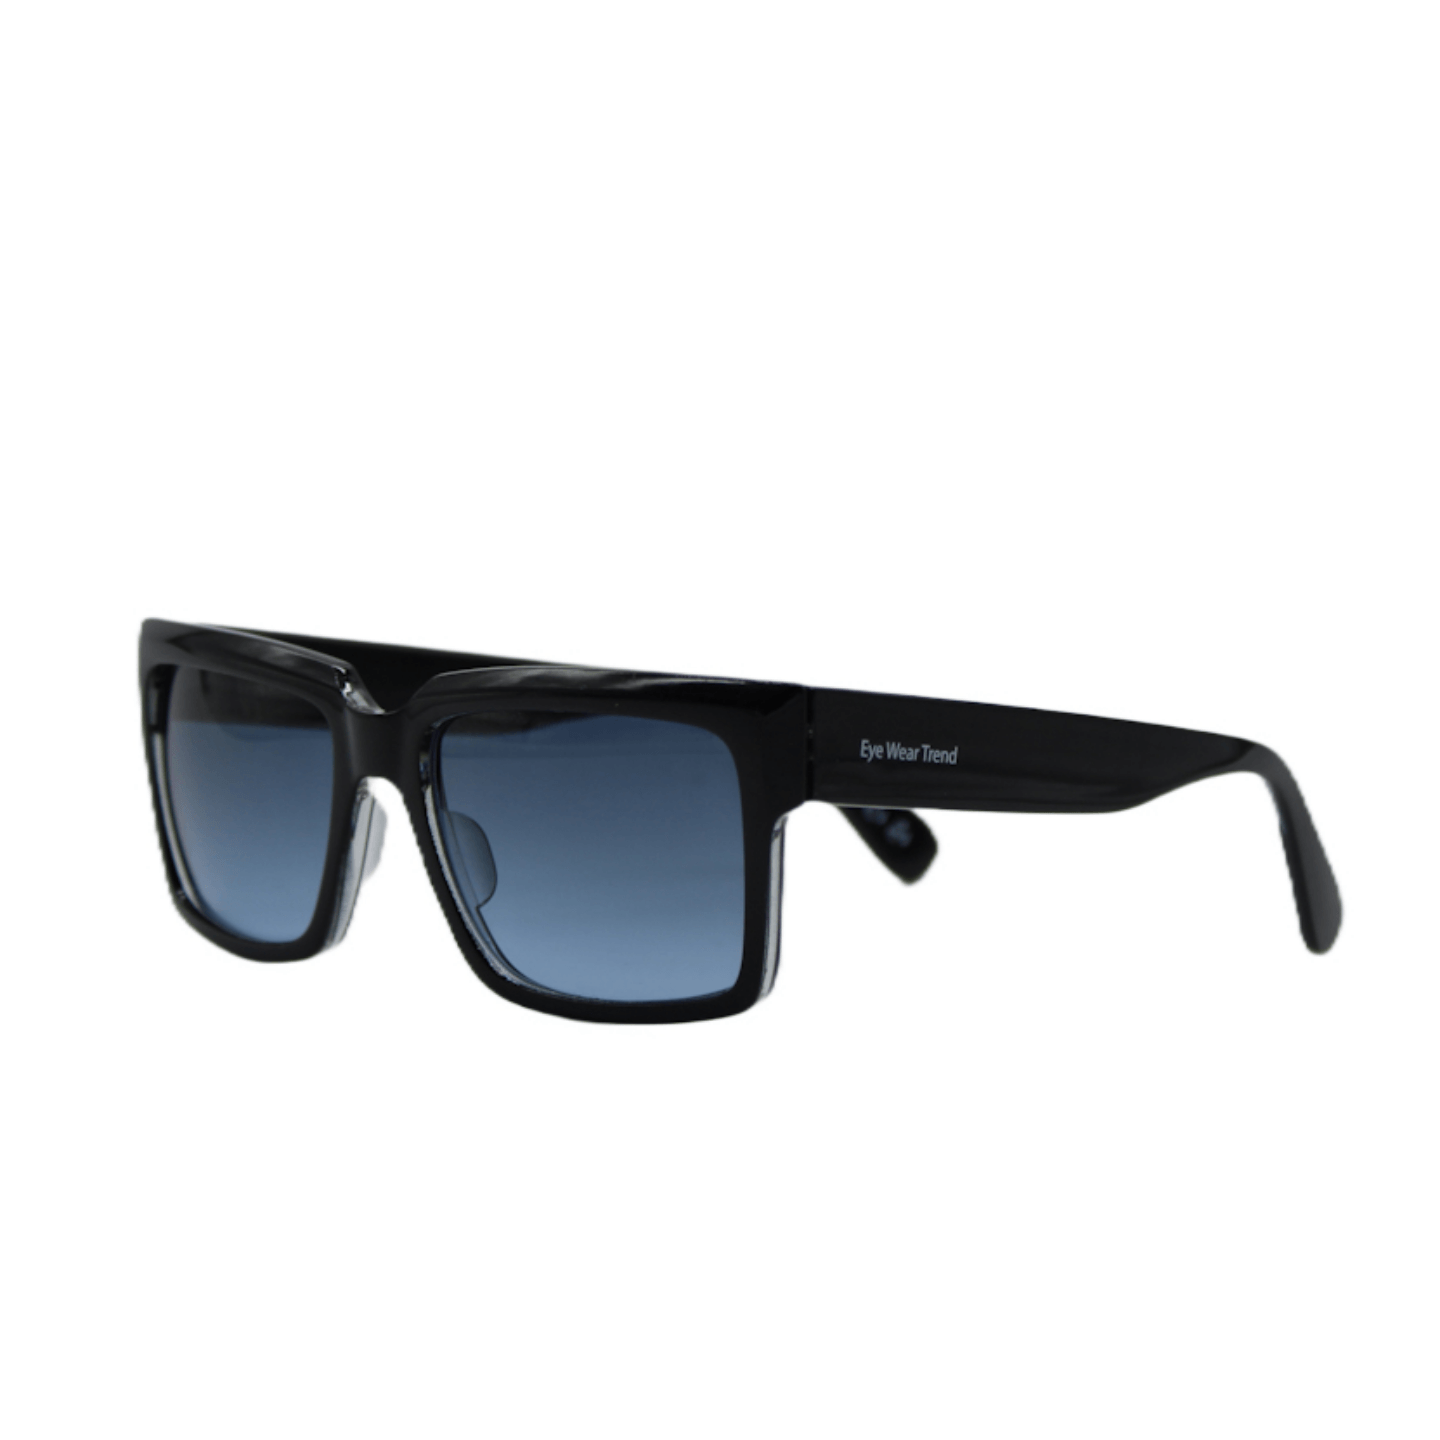 Black Sunglasses For Men And Women